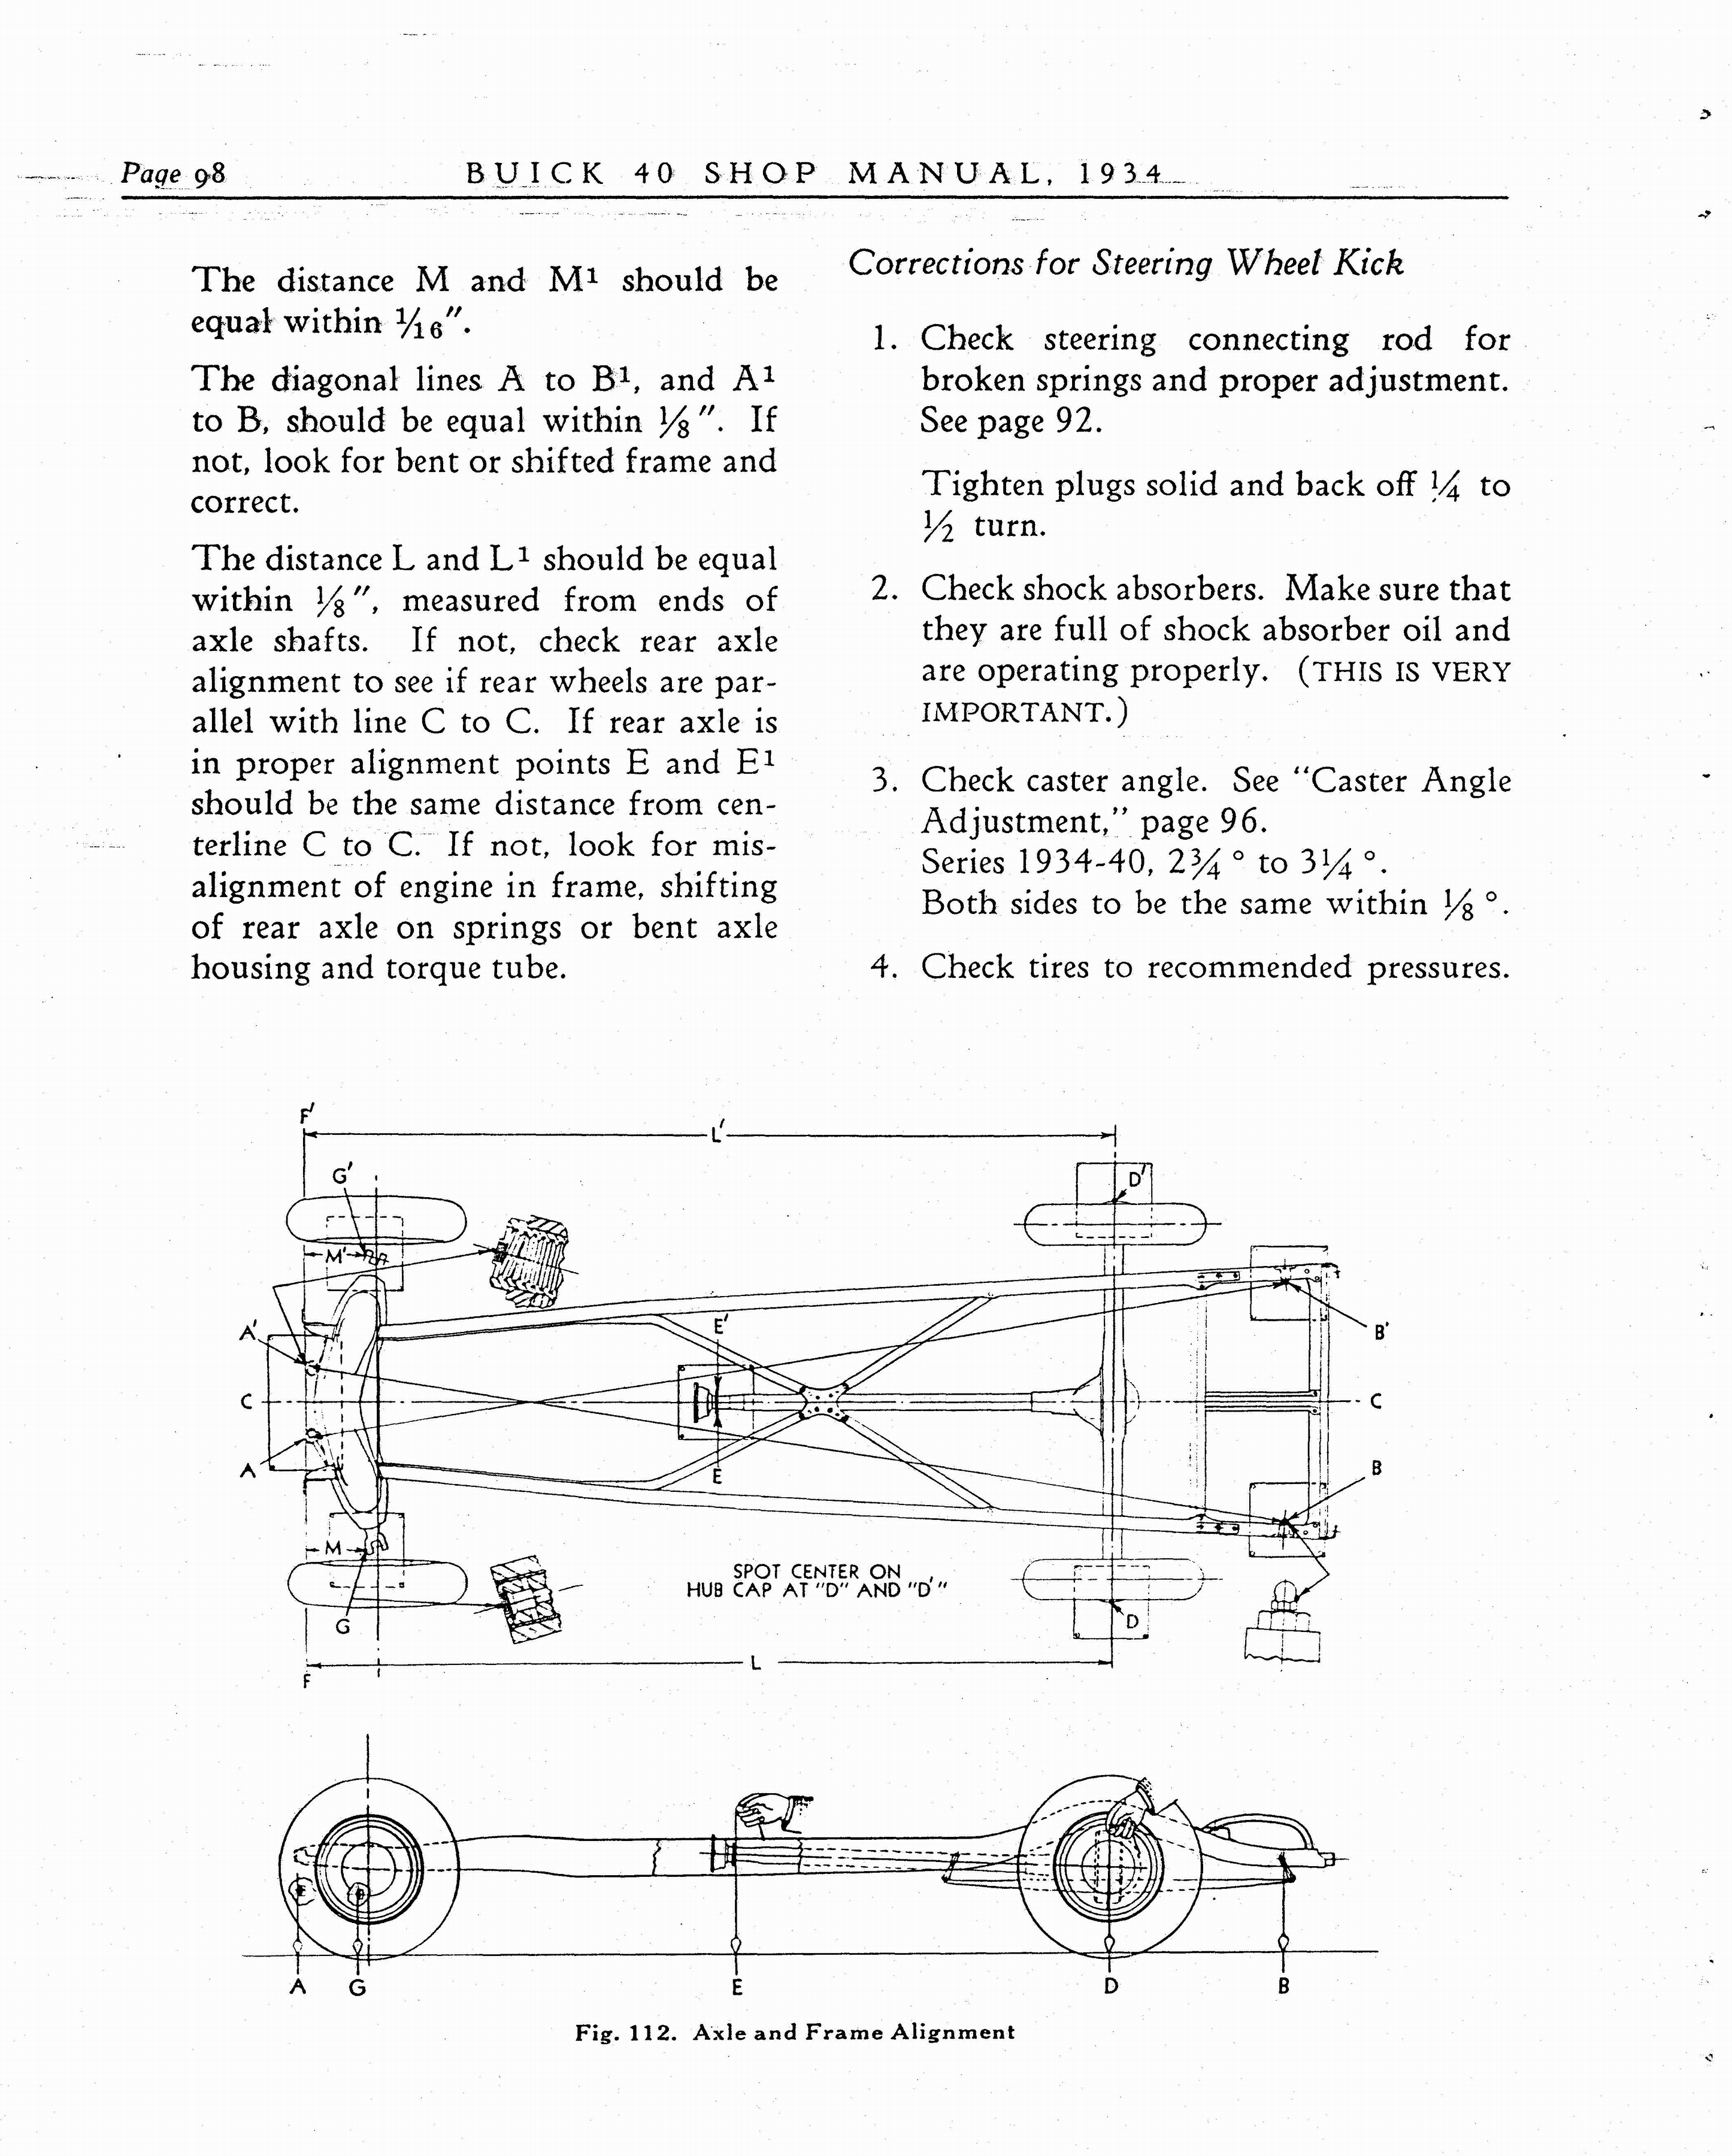 n_1934 Buick Series 40 Shop Manual_Page_099.jpg